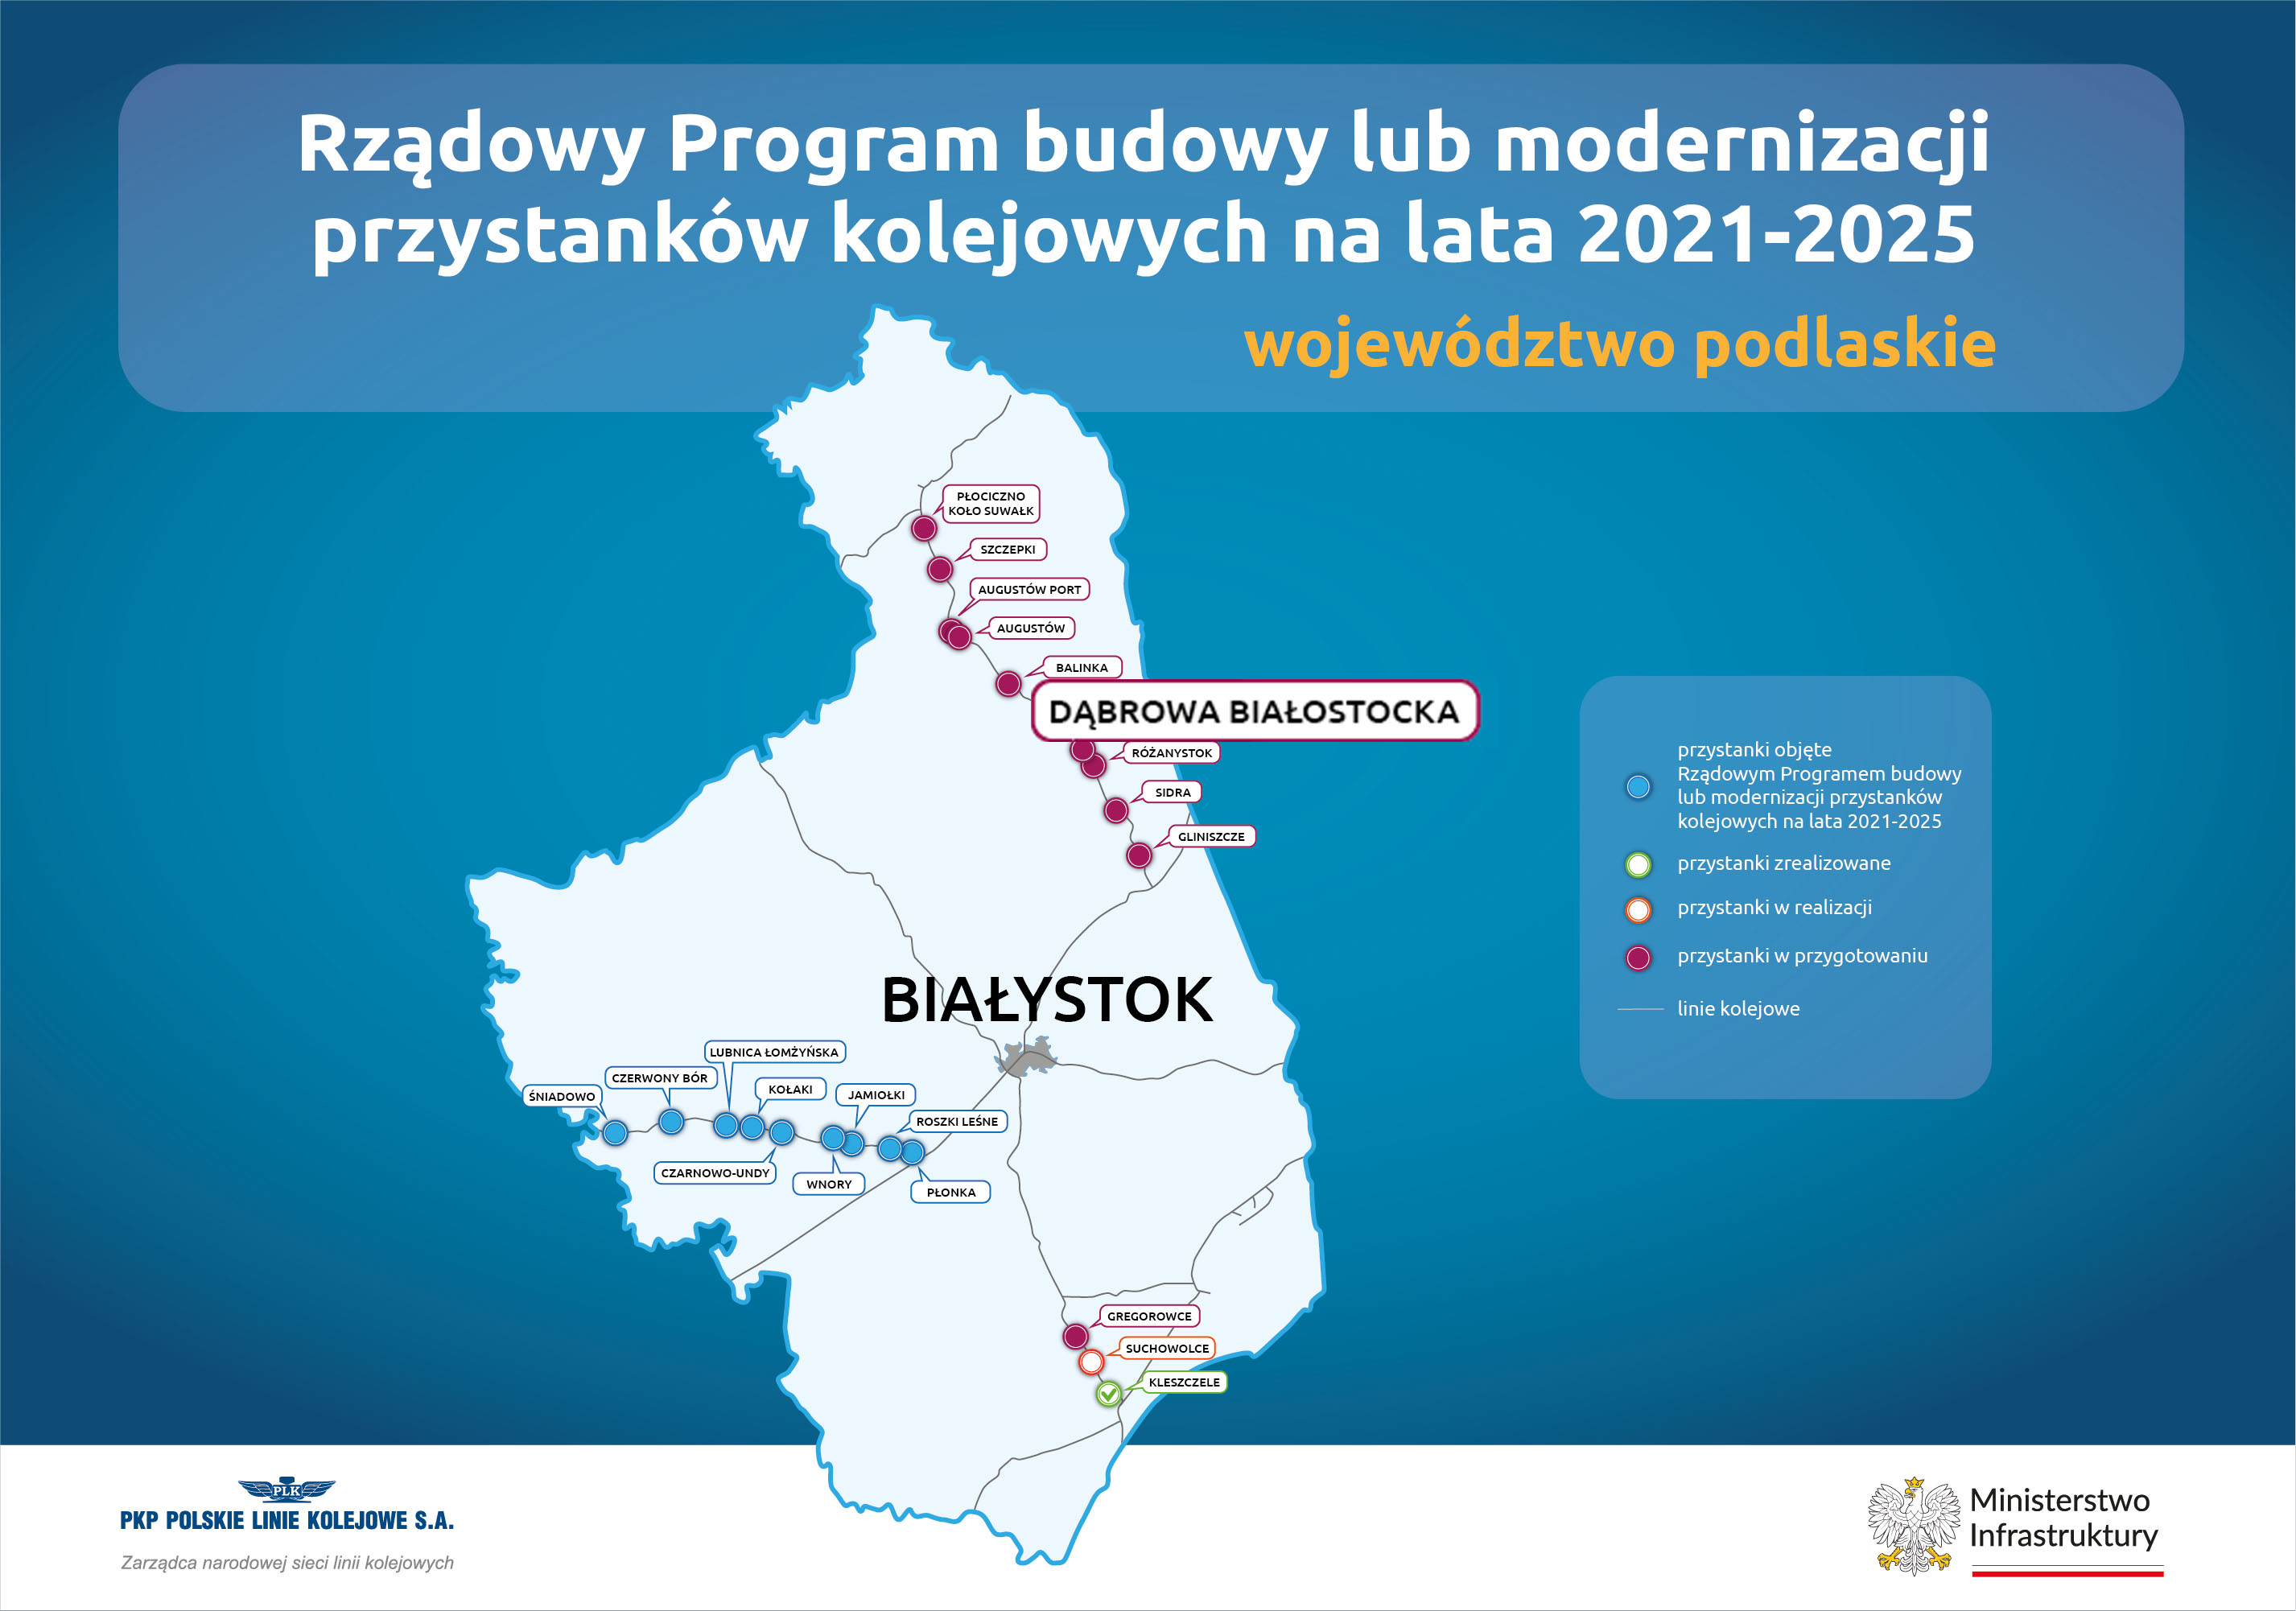 Rządowy Program budowy lub modernizacji przystanków kolejowych na lata 2021-2025 - województwo podlaskie